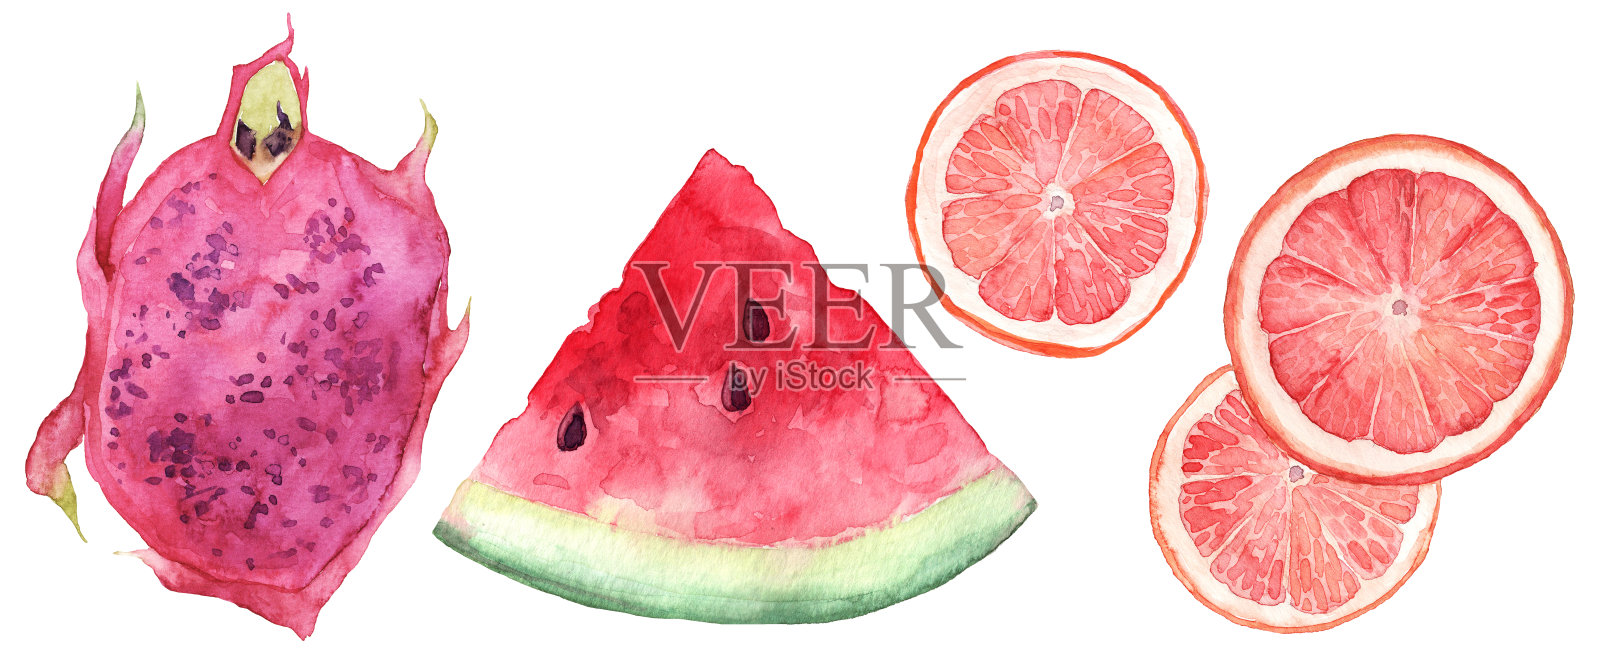 一套水彩手绘热带水果。西瓜、柚子、火龙果切片插画图片素材